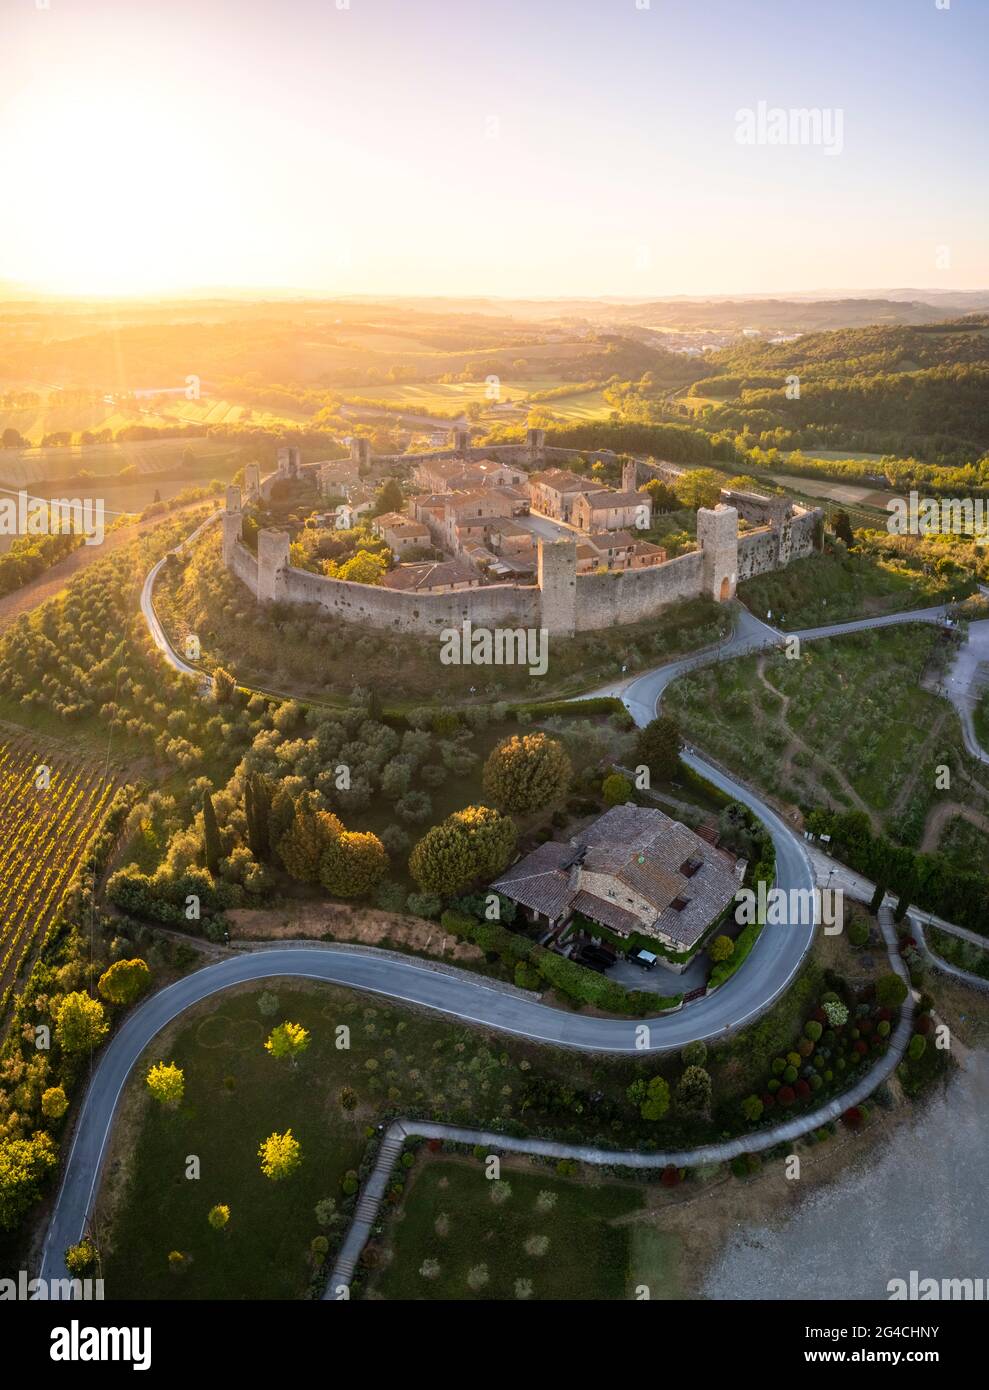 Vue aérienne de la ville médiévale de Monteriggioni au coucher du soleil. Monteriggioni, quartier de Sienne, Toscane, Italie. Banque D'Images